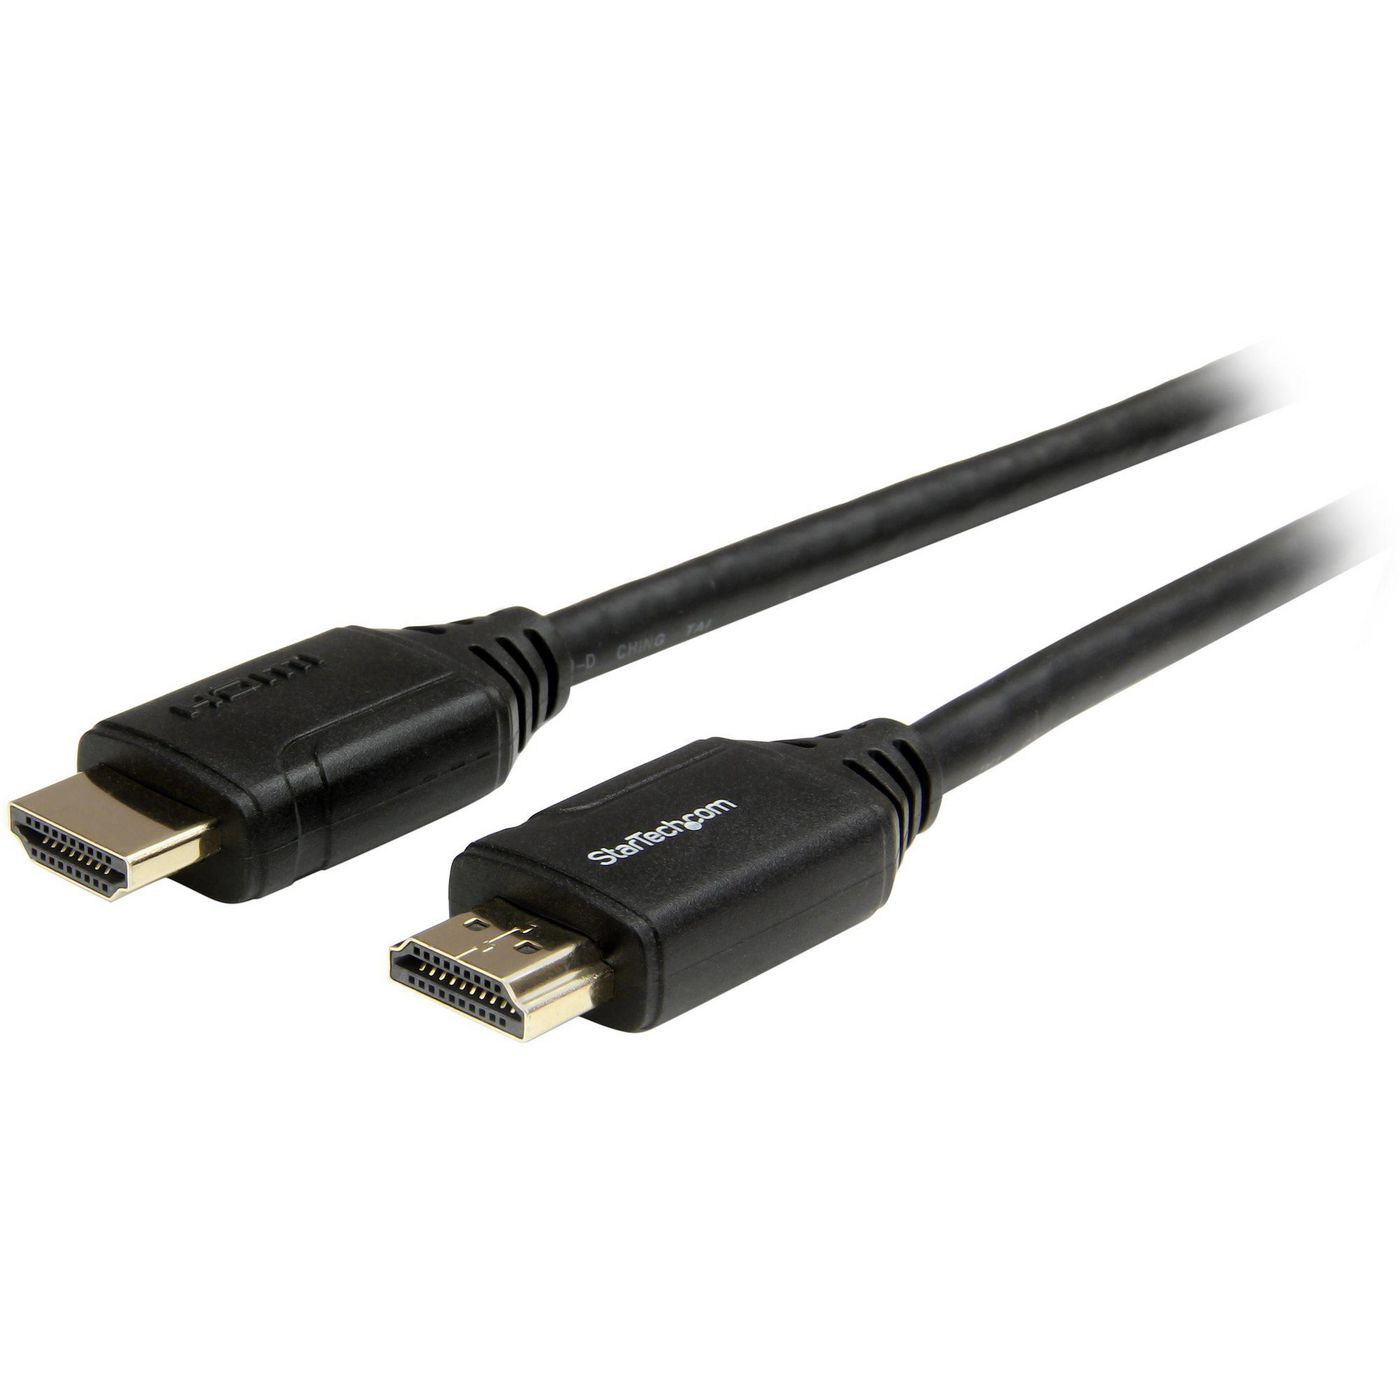 STARTECH.COM Premium High Speed HDMI Kabel mit Ethernet - 4K 60Hz - HDMI 2.0 - 2m